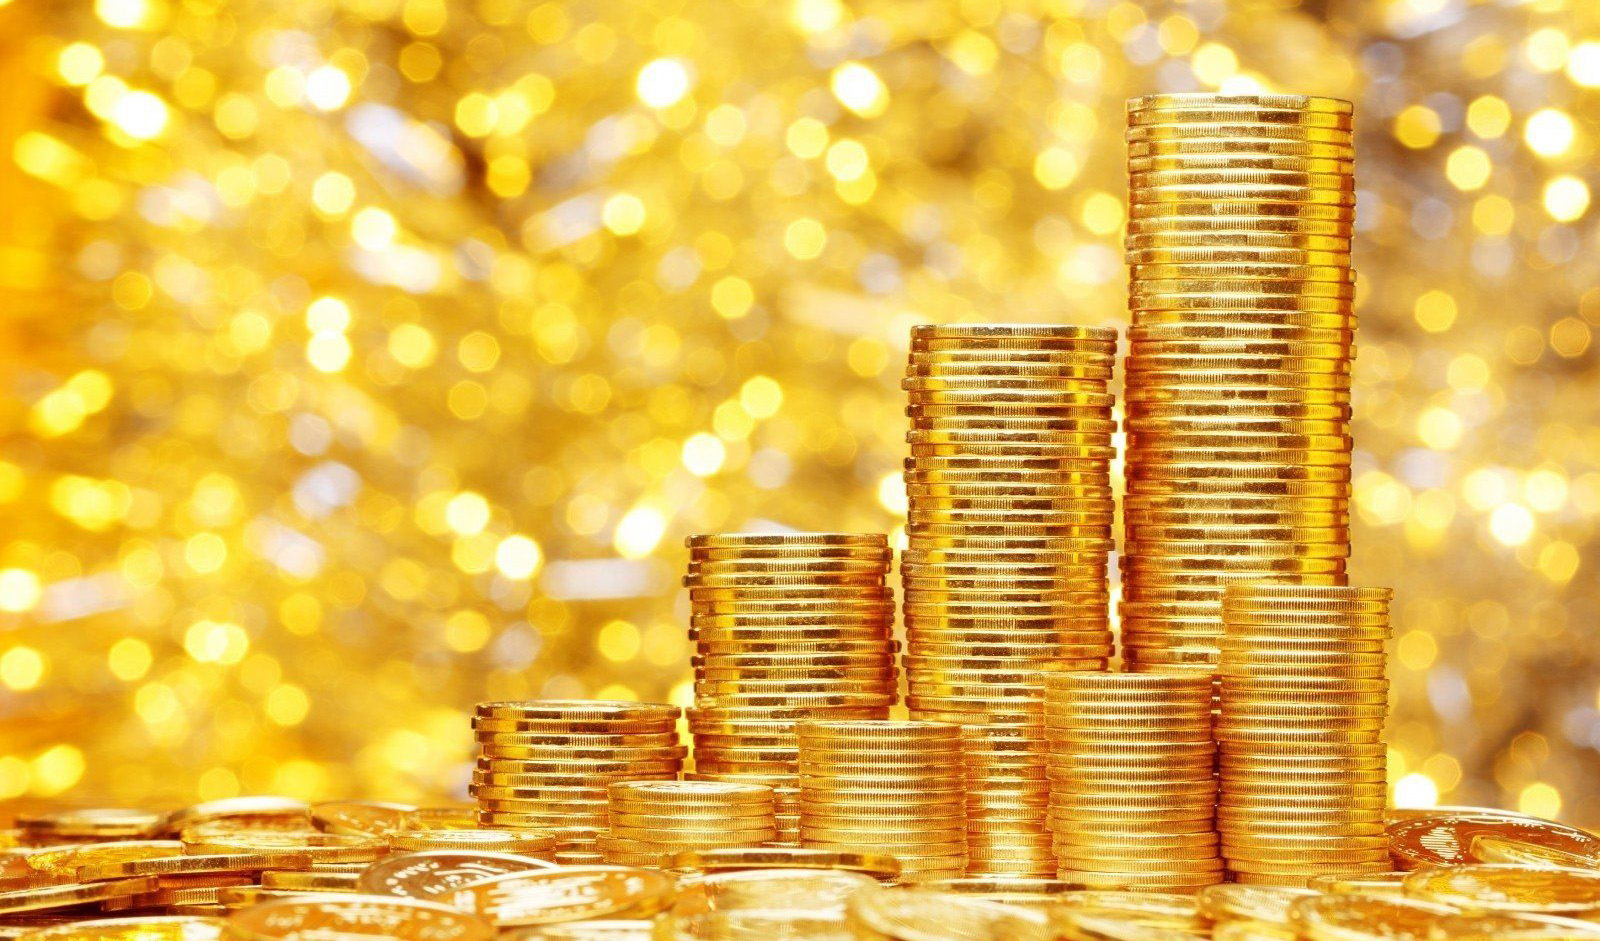 افزایش عجیب قیمت سکه/ طلا ۱۶.۷ درصد جهش پیدا کرد